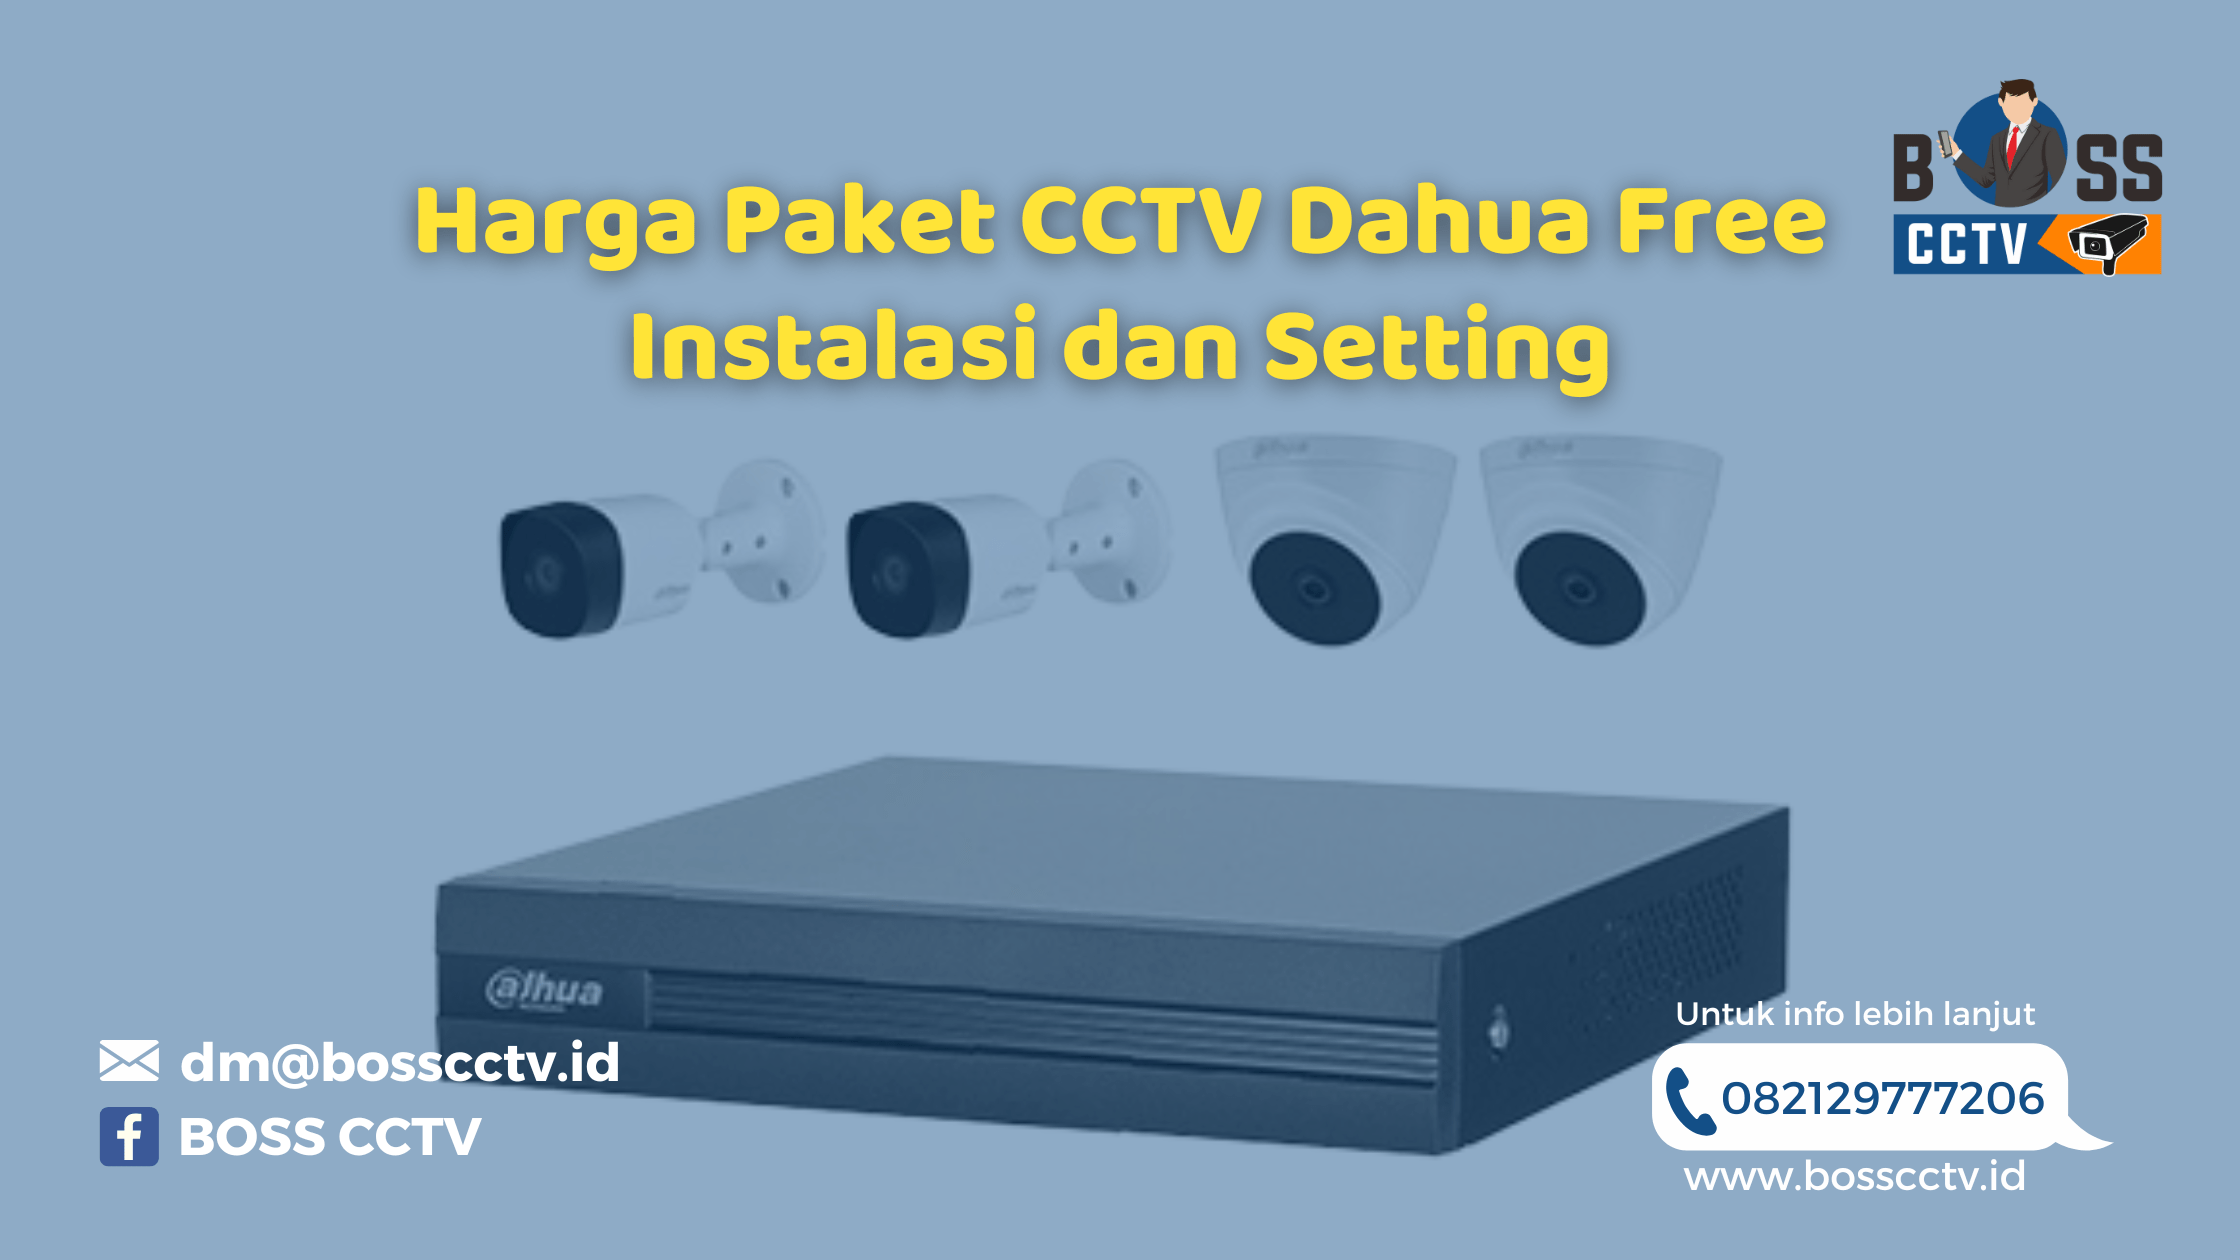 Harga Paket CCTV Dahua Free Instalasi dan Setting BOSS CCTV